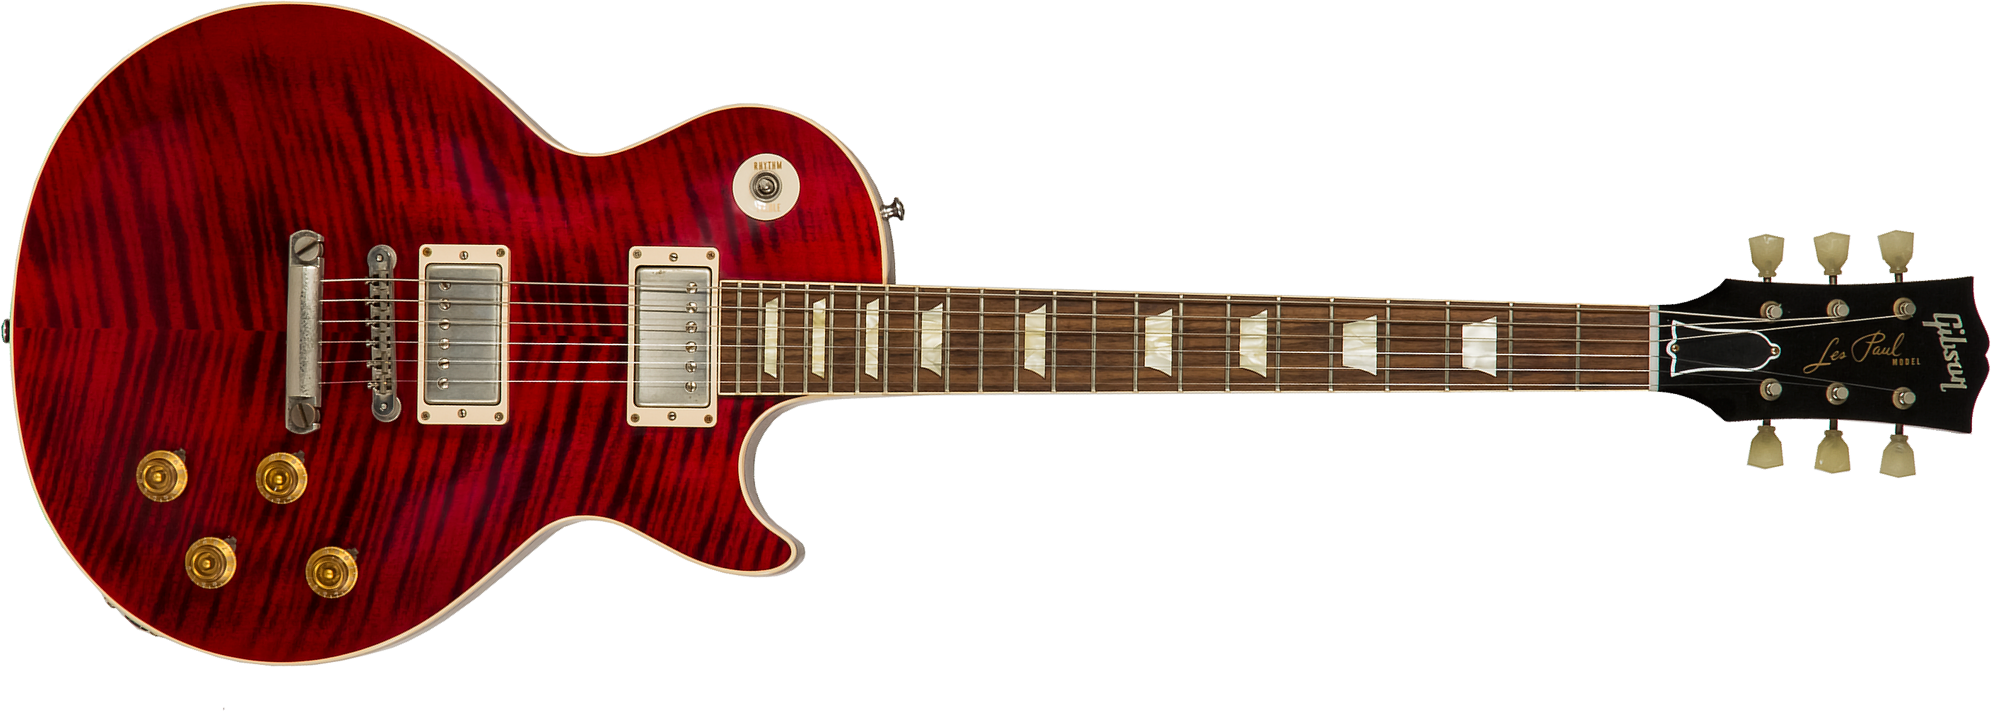 Gibson Custom Shop M2m Les Paul Standard 1959 Reissue 2h Ht Rw #943147 - Vos Red Tiger - Enkel gesneden elektrische gitaar - Main picture